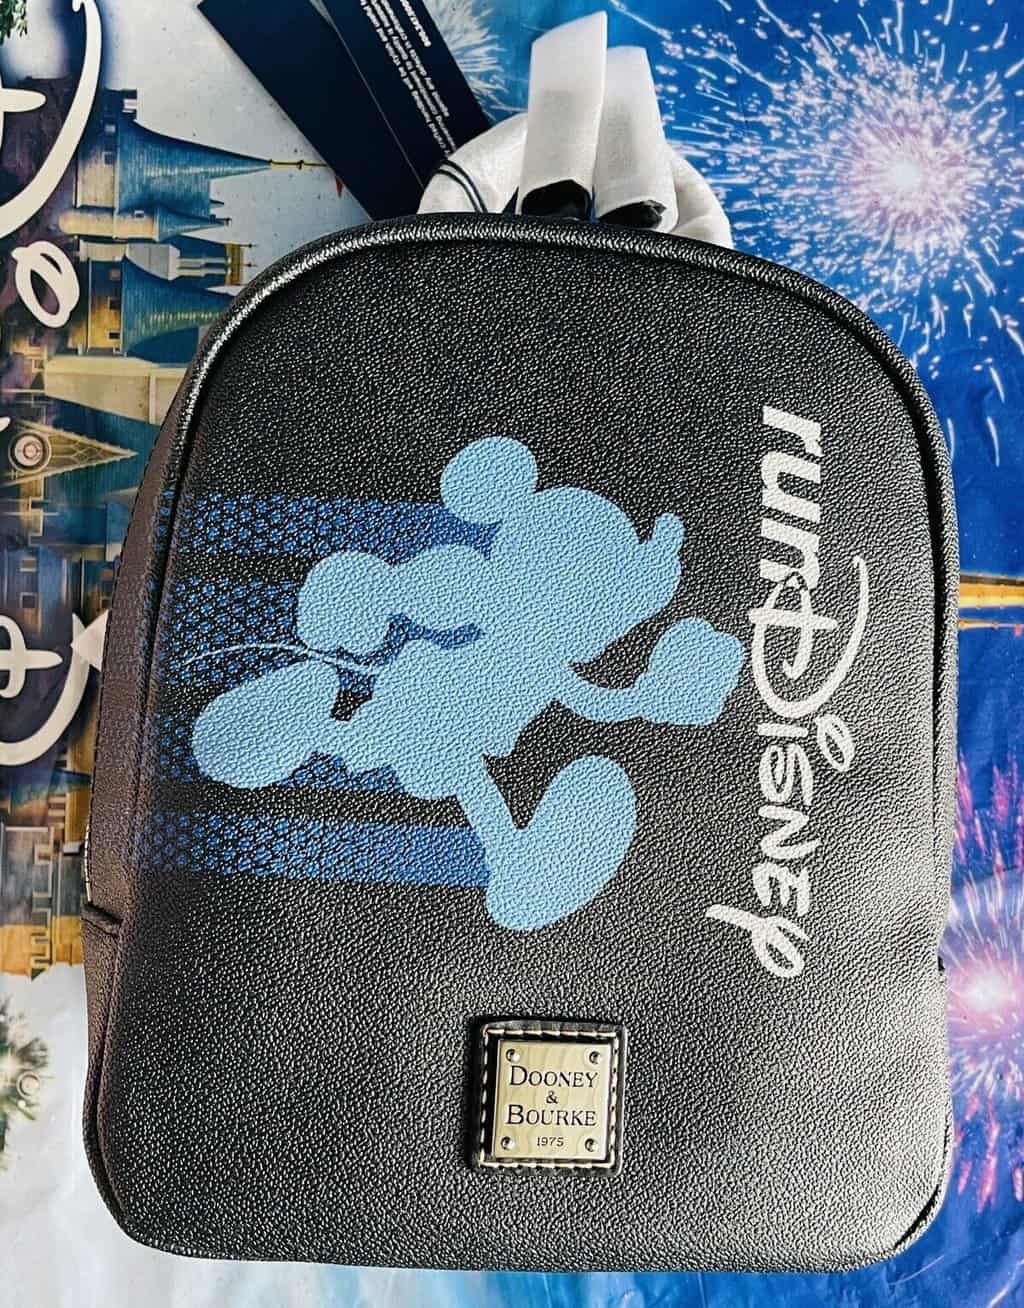 Disney Dooney and Bourke runDisney 2022 Backpack by Disney Dooney